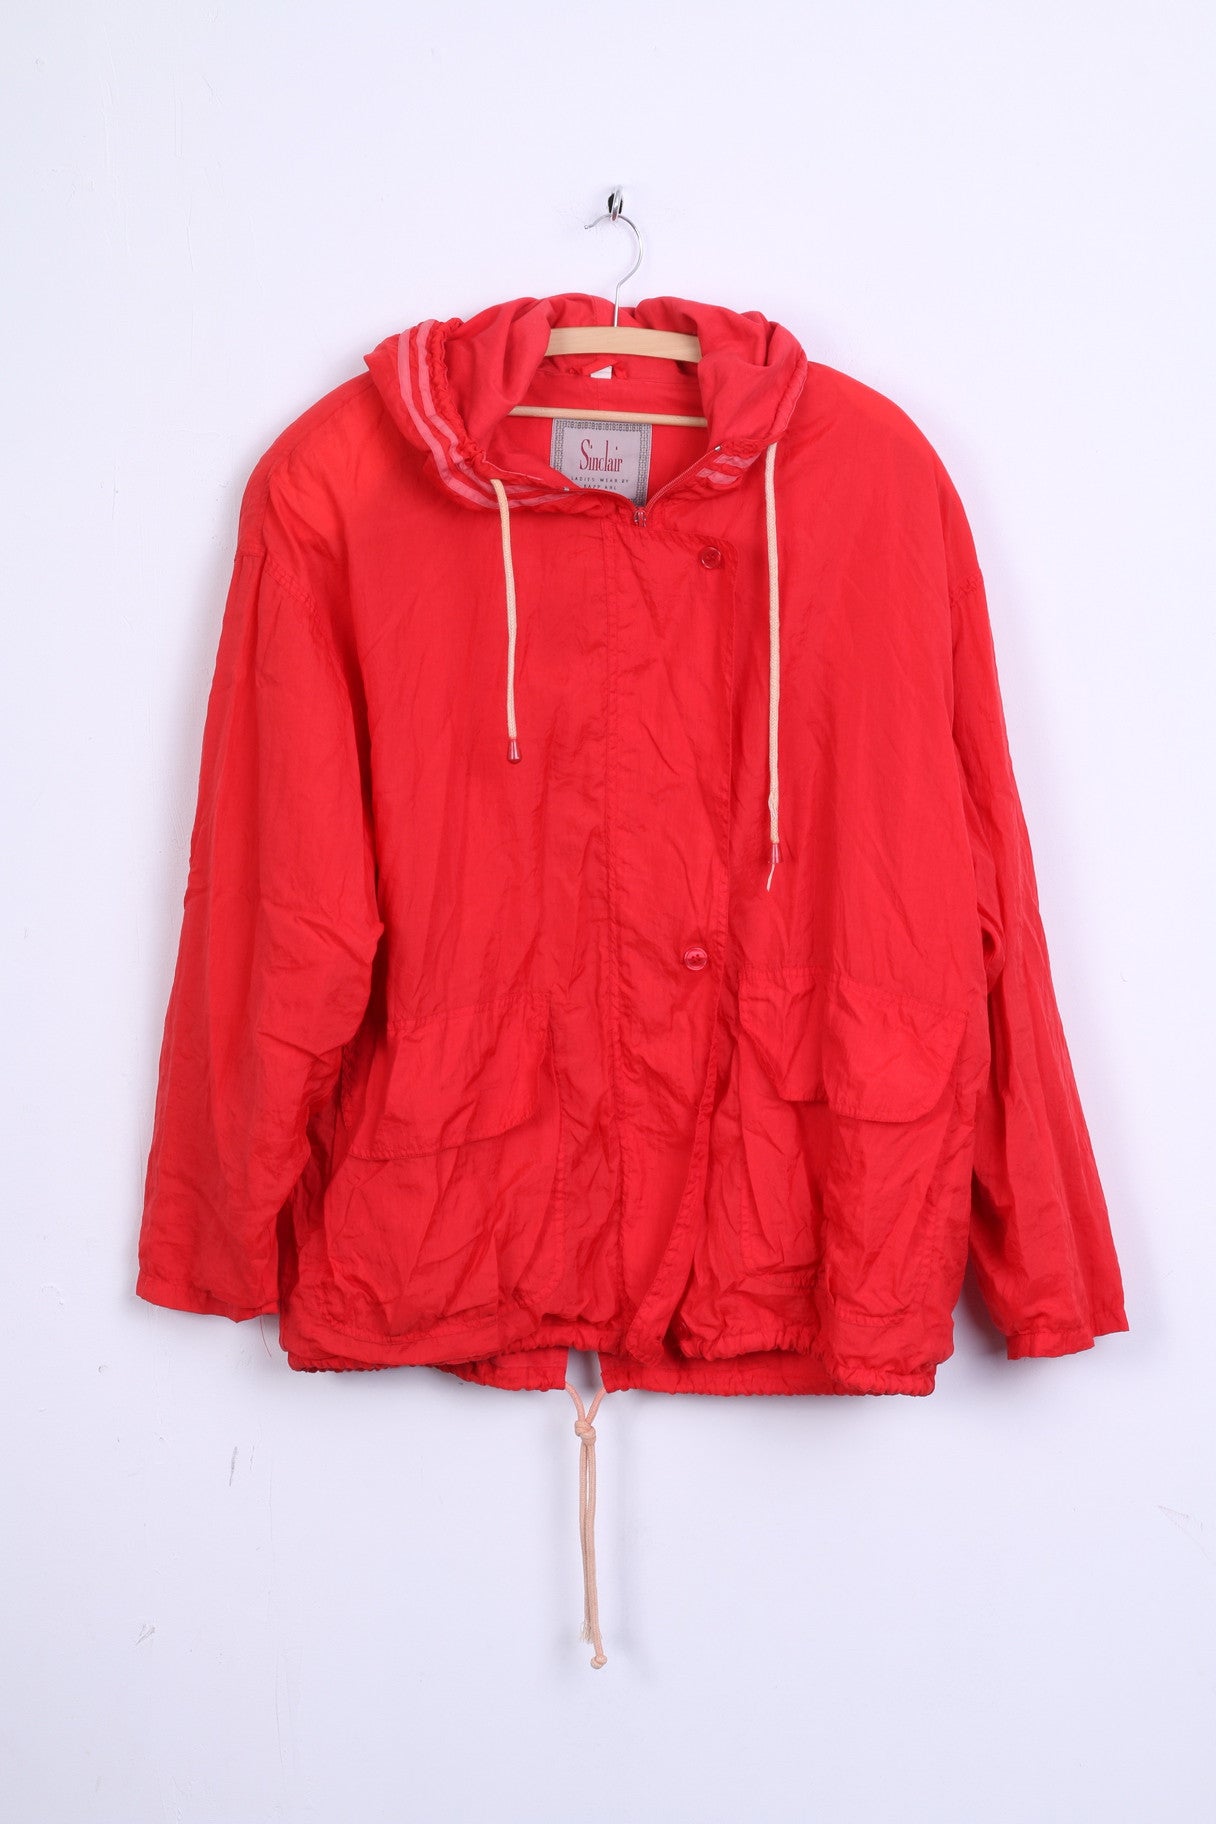 Sinclair Mens 34/36 XL Jacket Red Nylon Waterproof Hood Sport